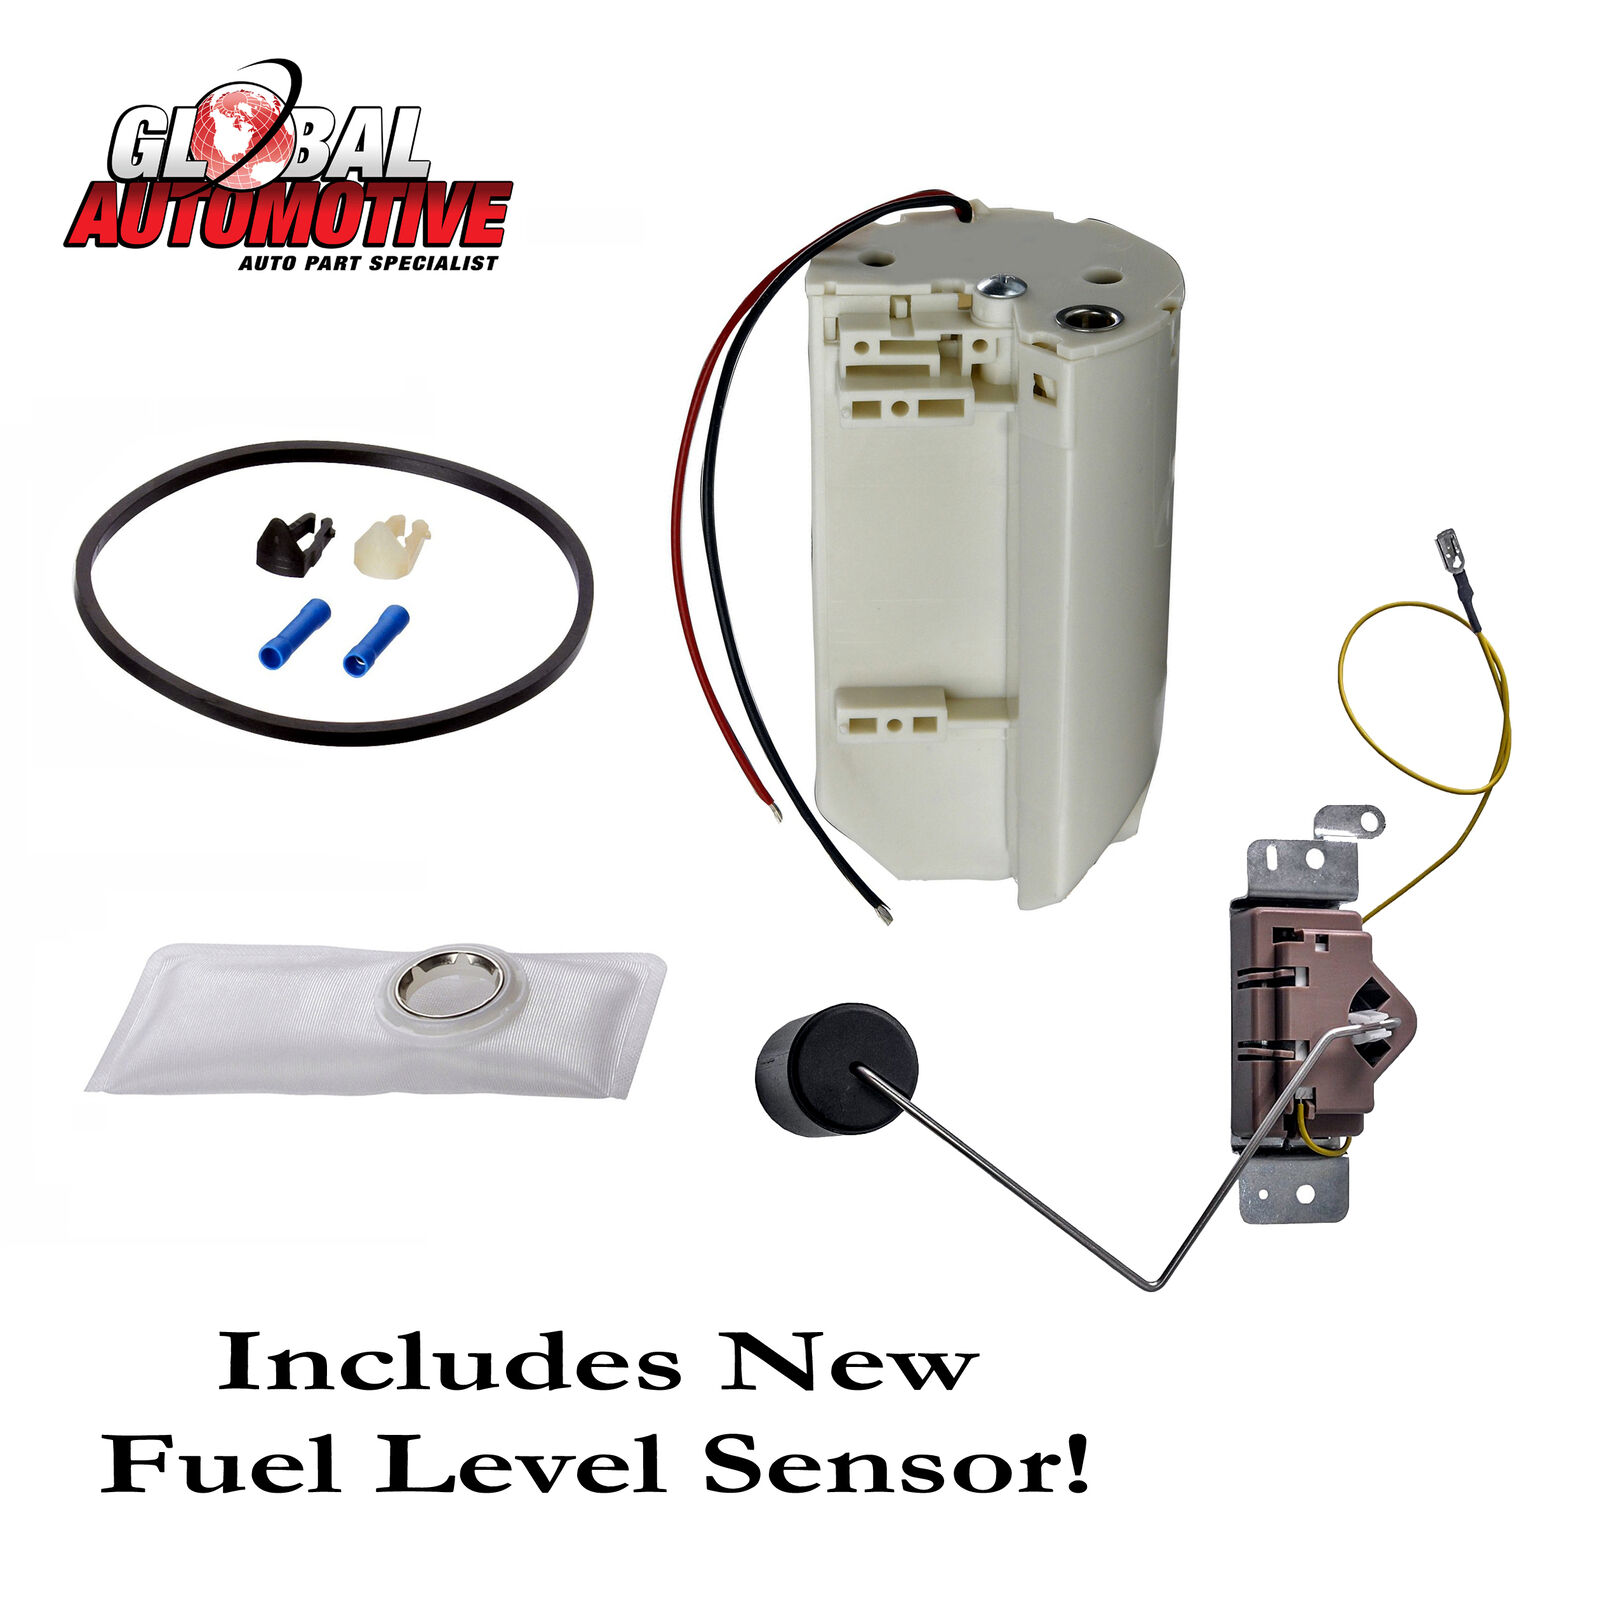 Fuel Pump Module & Fuel Level Sensor Sending Unit fits 1989-1997 Ford Pickup Van